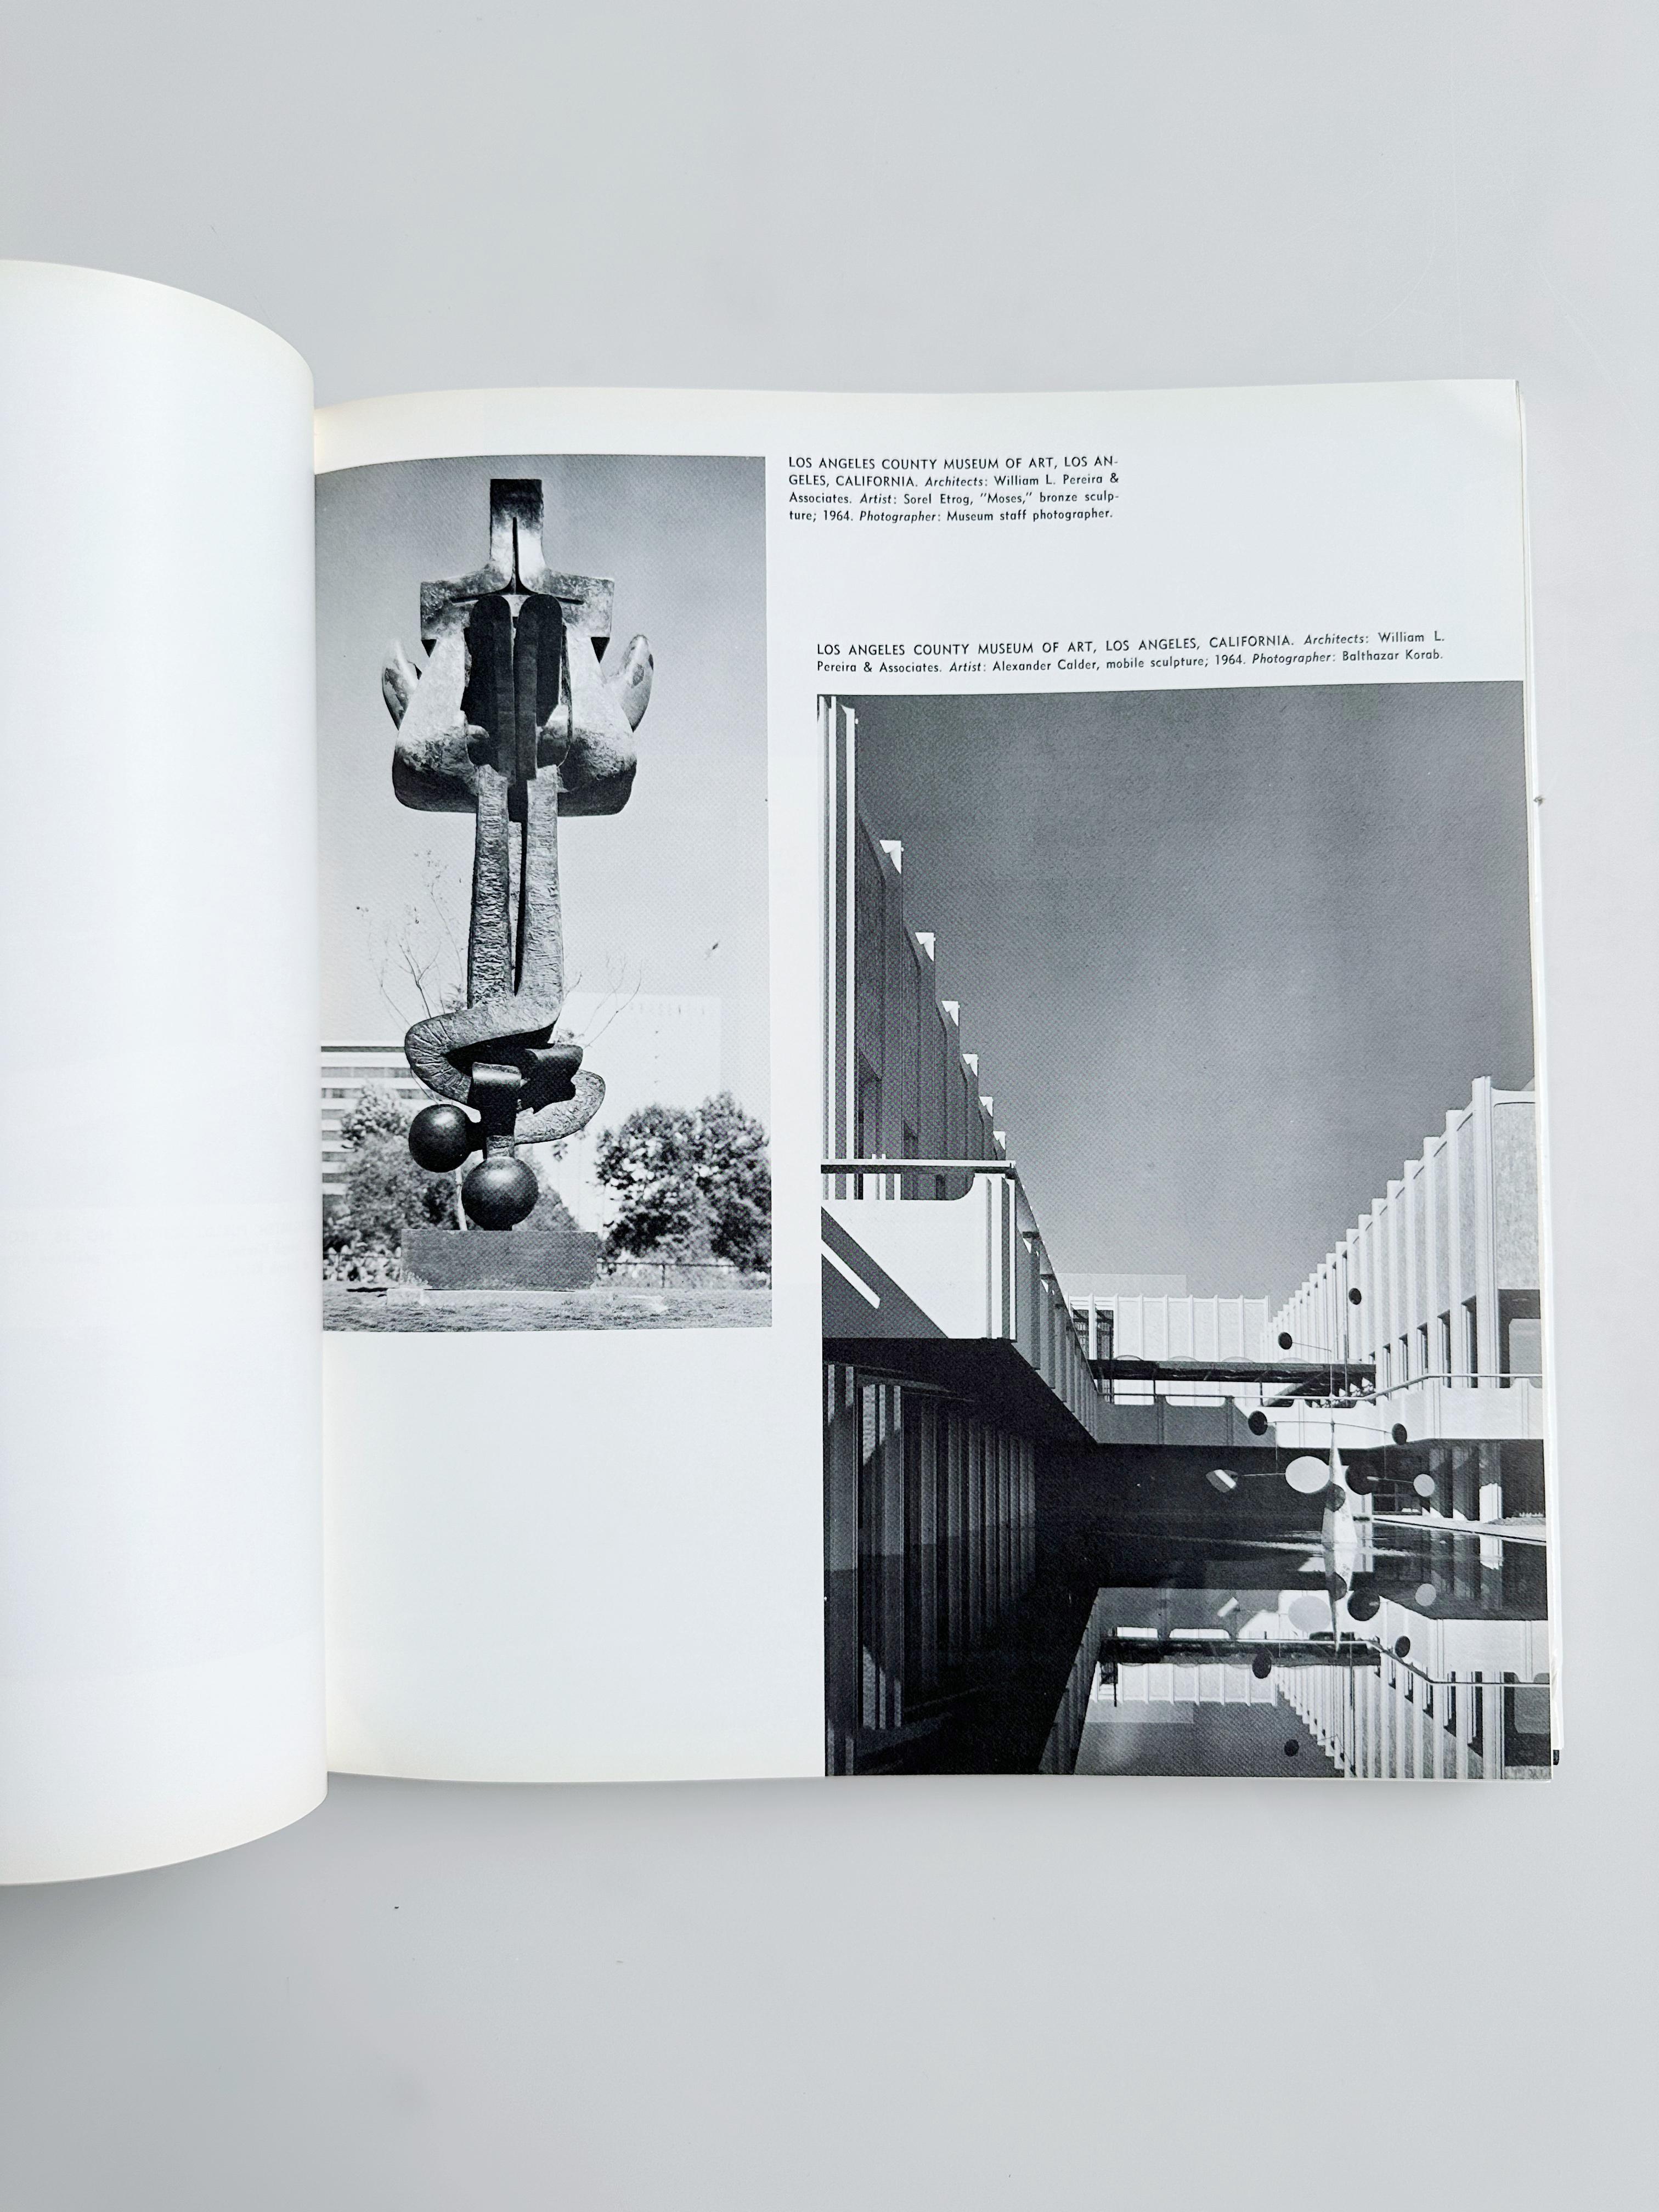 L'art dans l'architecture, par Louis G. Redstone, 1968

Couverture rigide, jaquette

//

10 x 11.5
256 pages
// u2028

*Bon état, signes mineurs d'utilisation sur la jaquette